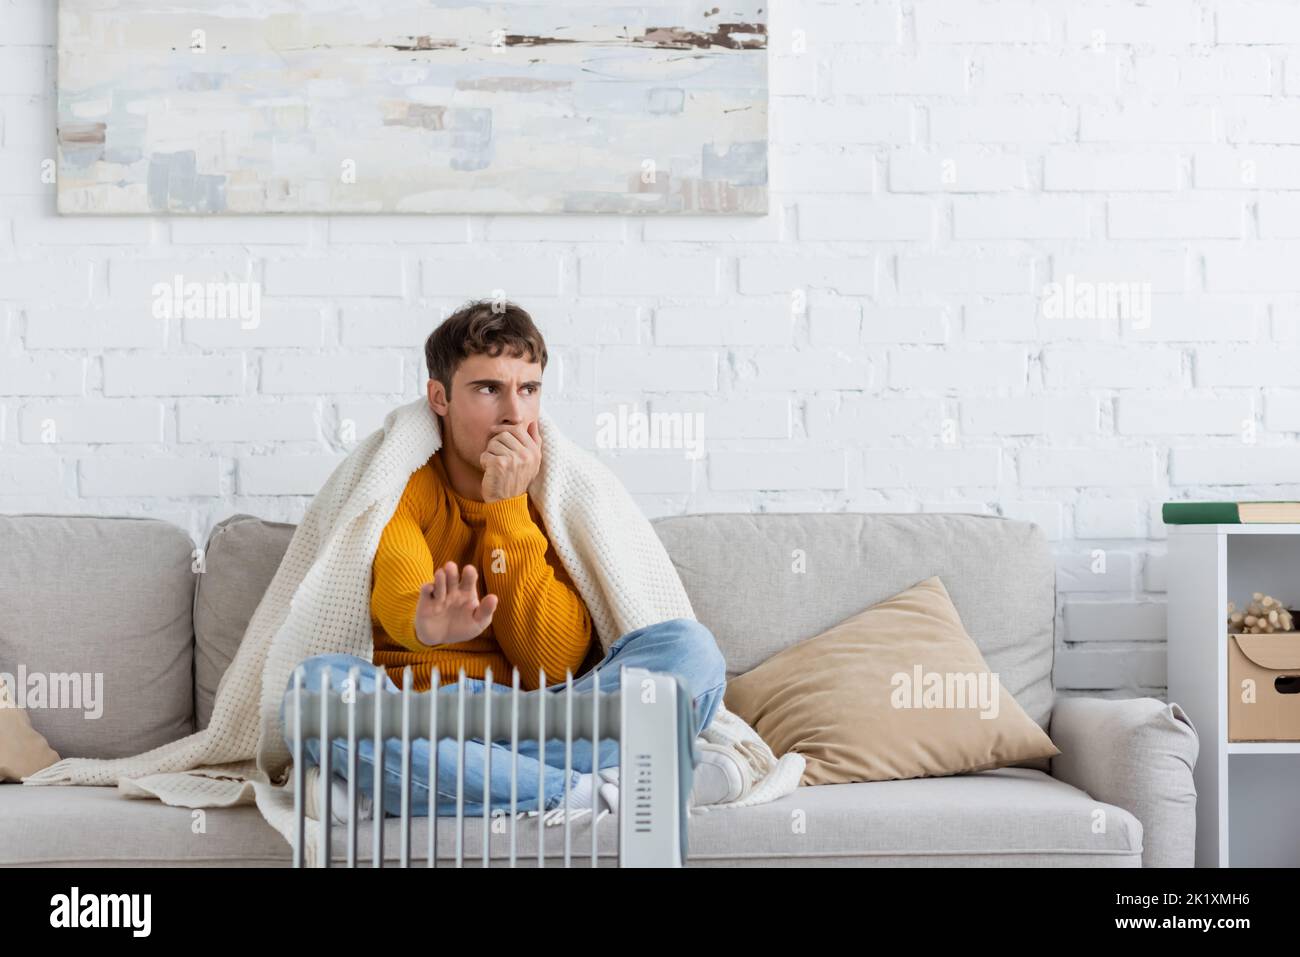 Junger Mann, der mit einer Decke bedeckt ist, sitzt auf der Couch und wärmt die Hände in der Nähe des modernen Heizkörperheizers, Stockbild Stockfoto